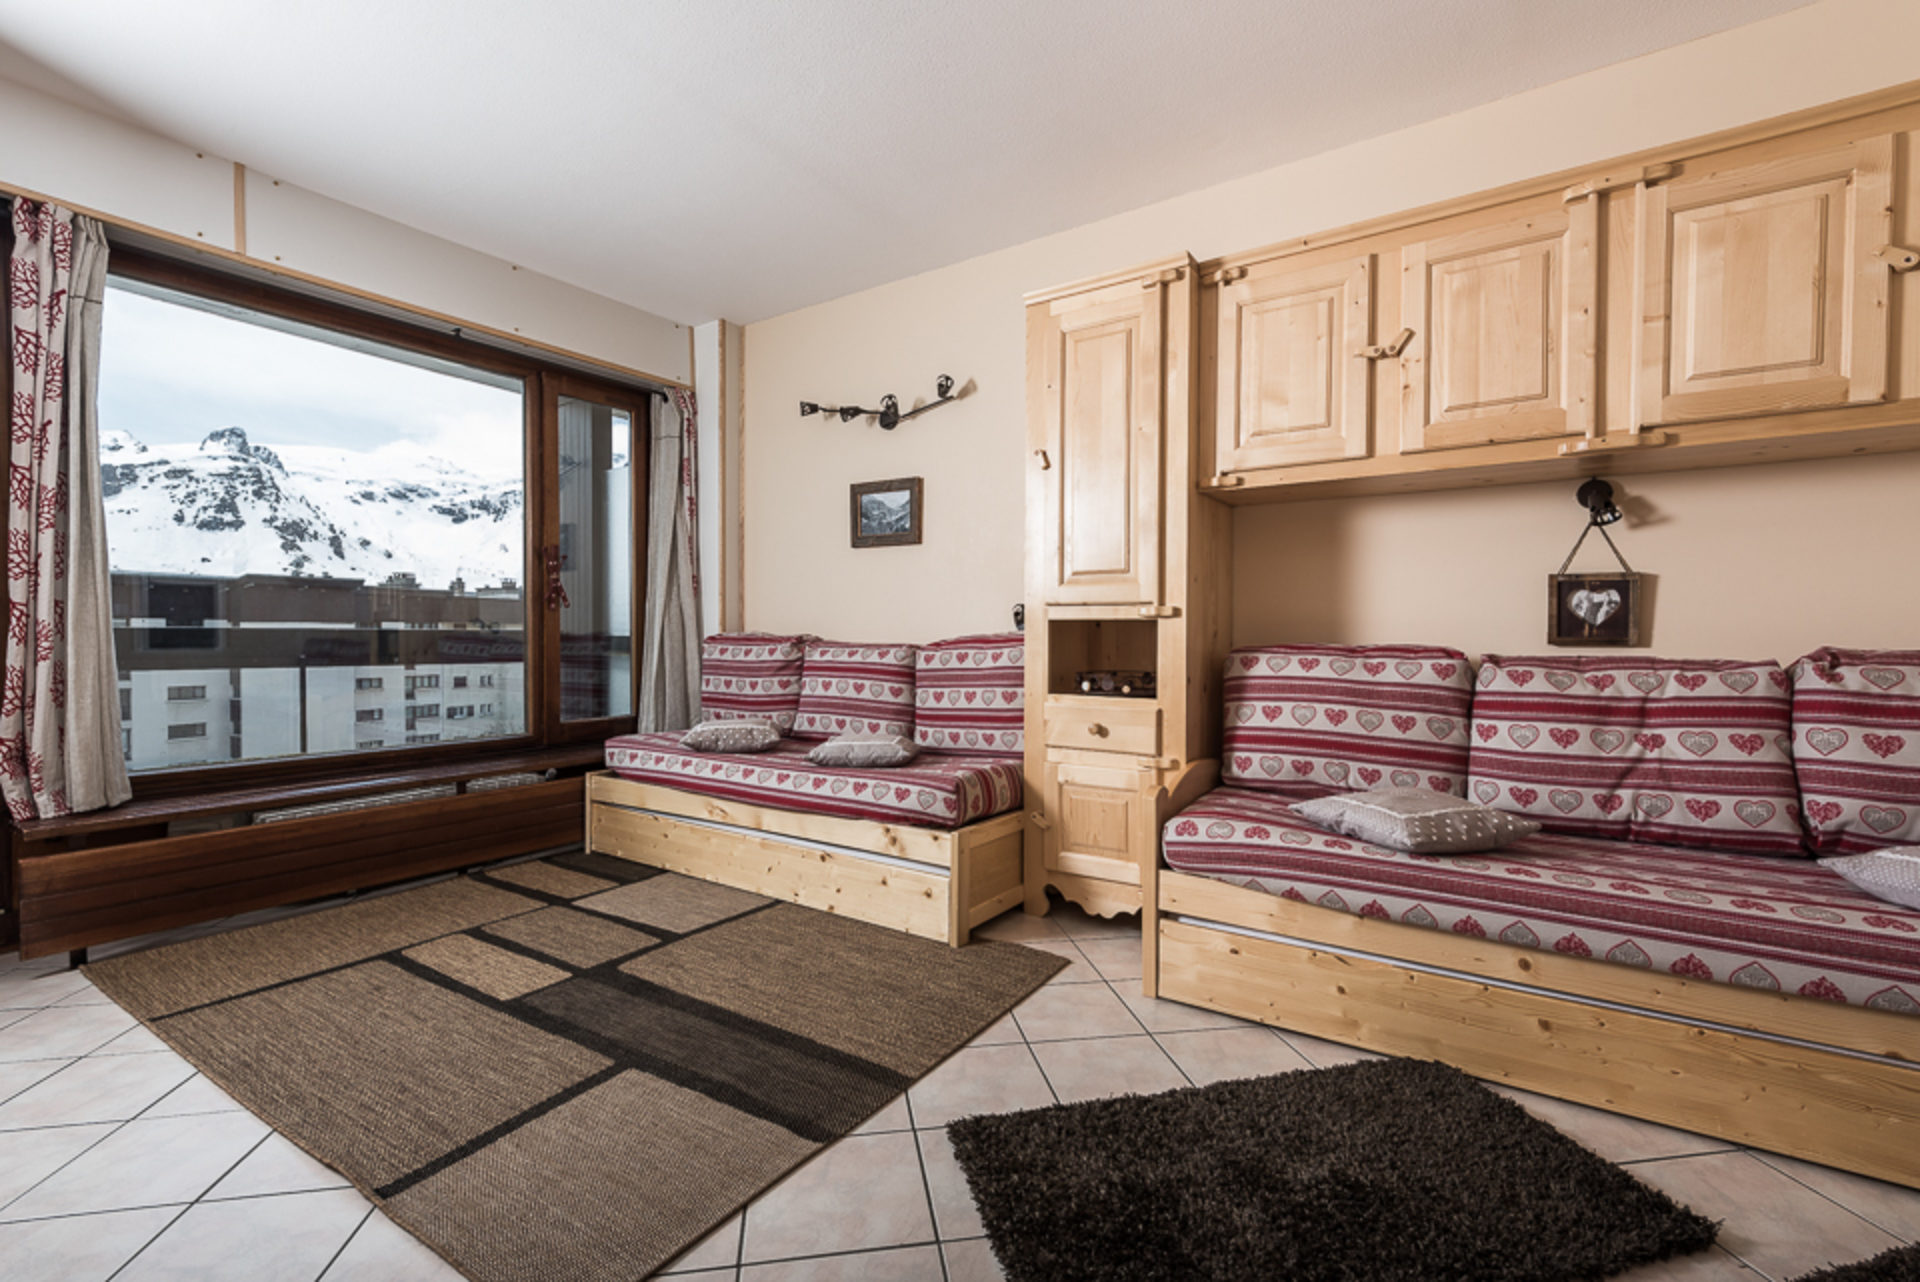 Studio 4 people - travelski home choice - Apartements BEC ROUGE - Tignes 2100 Le Lac